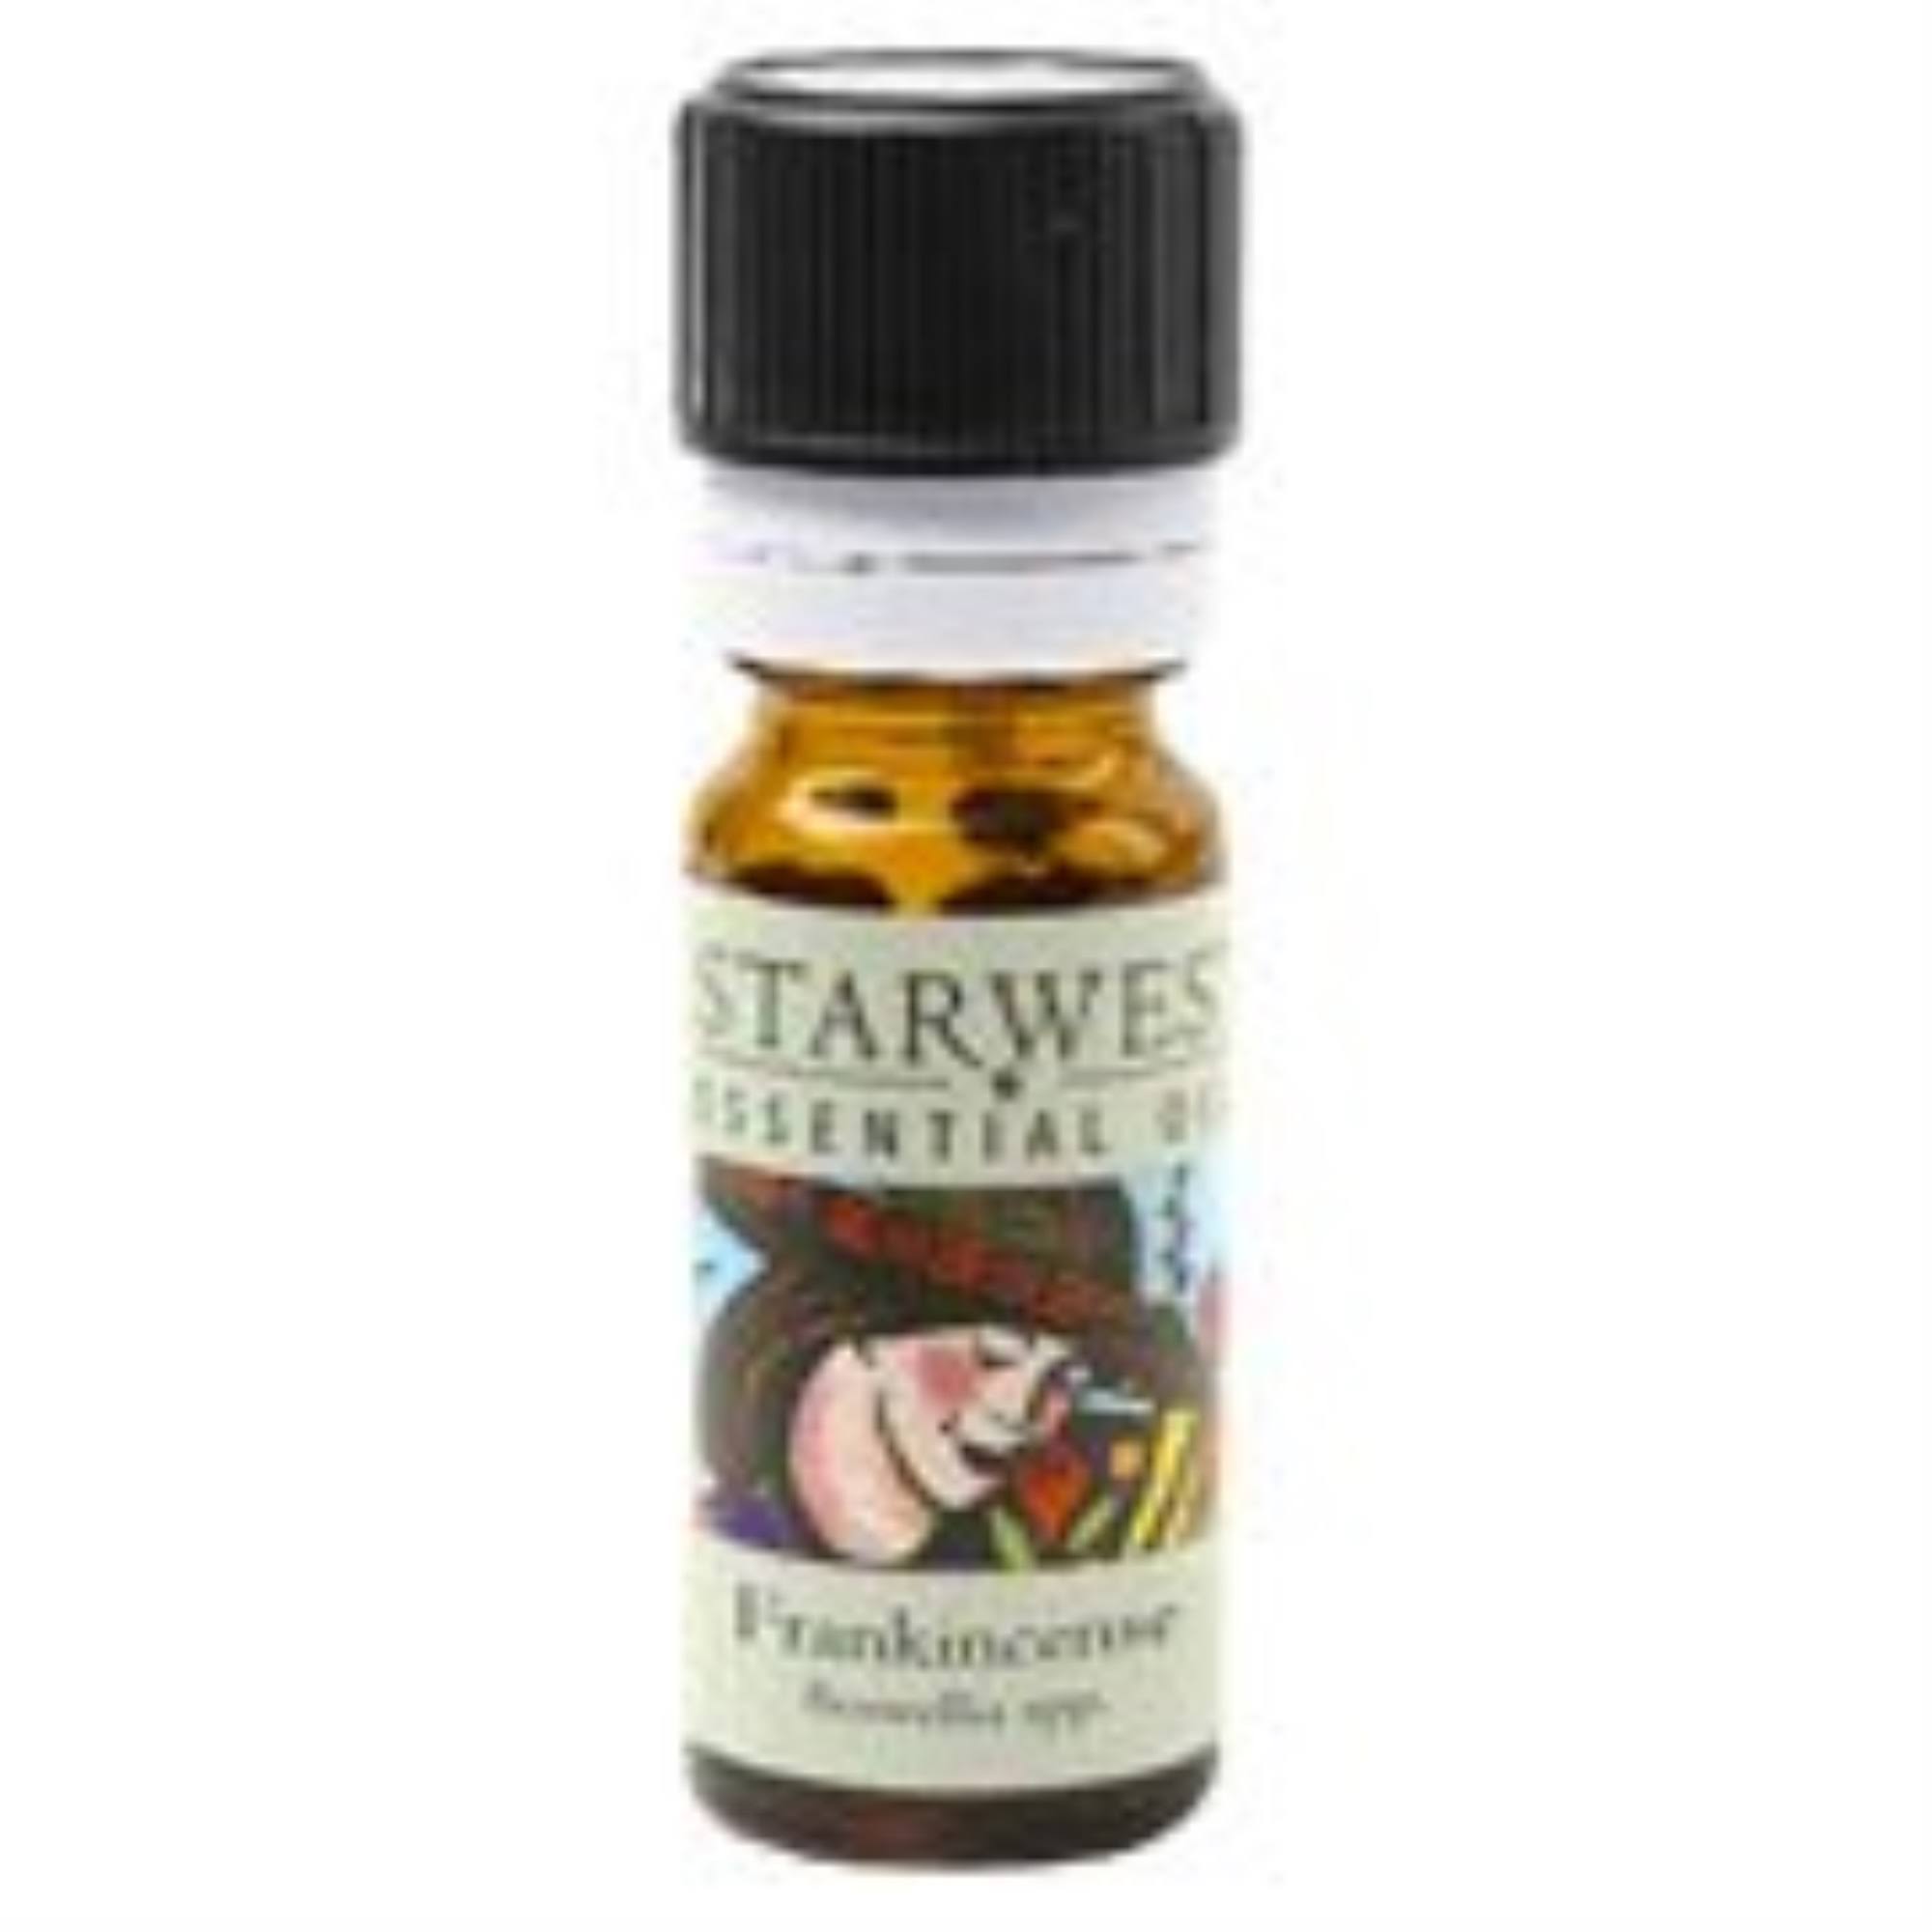 Starwest Botanicals Frankincense Essential Oil - 1/3oz